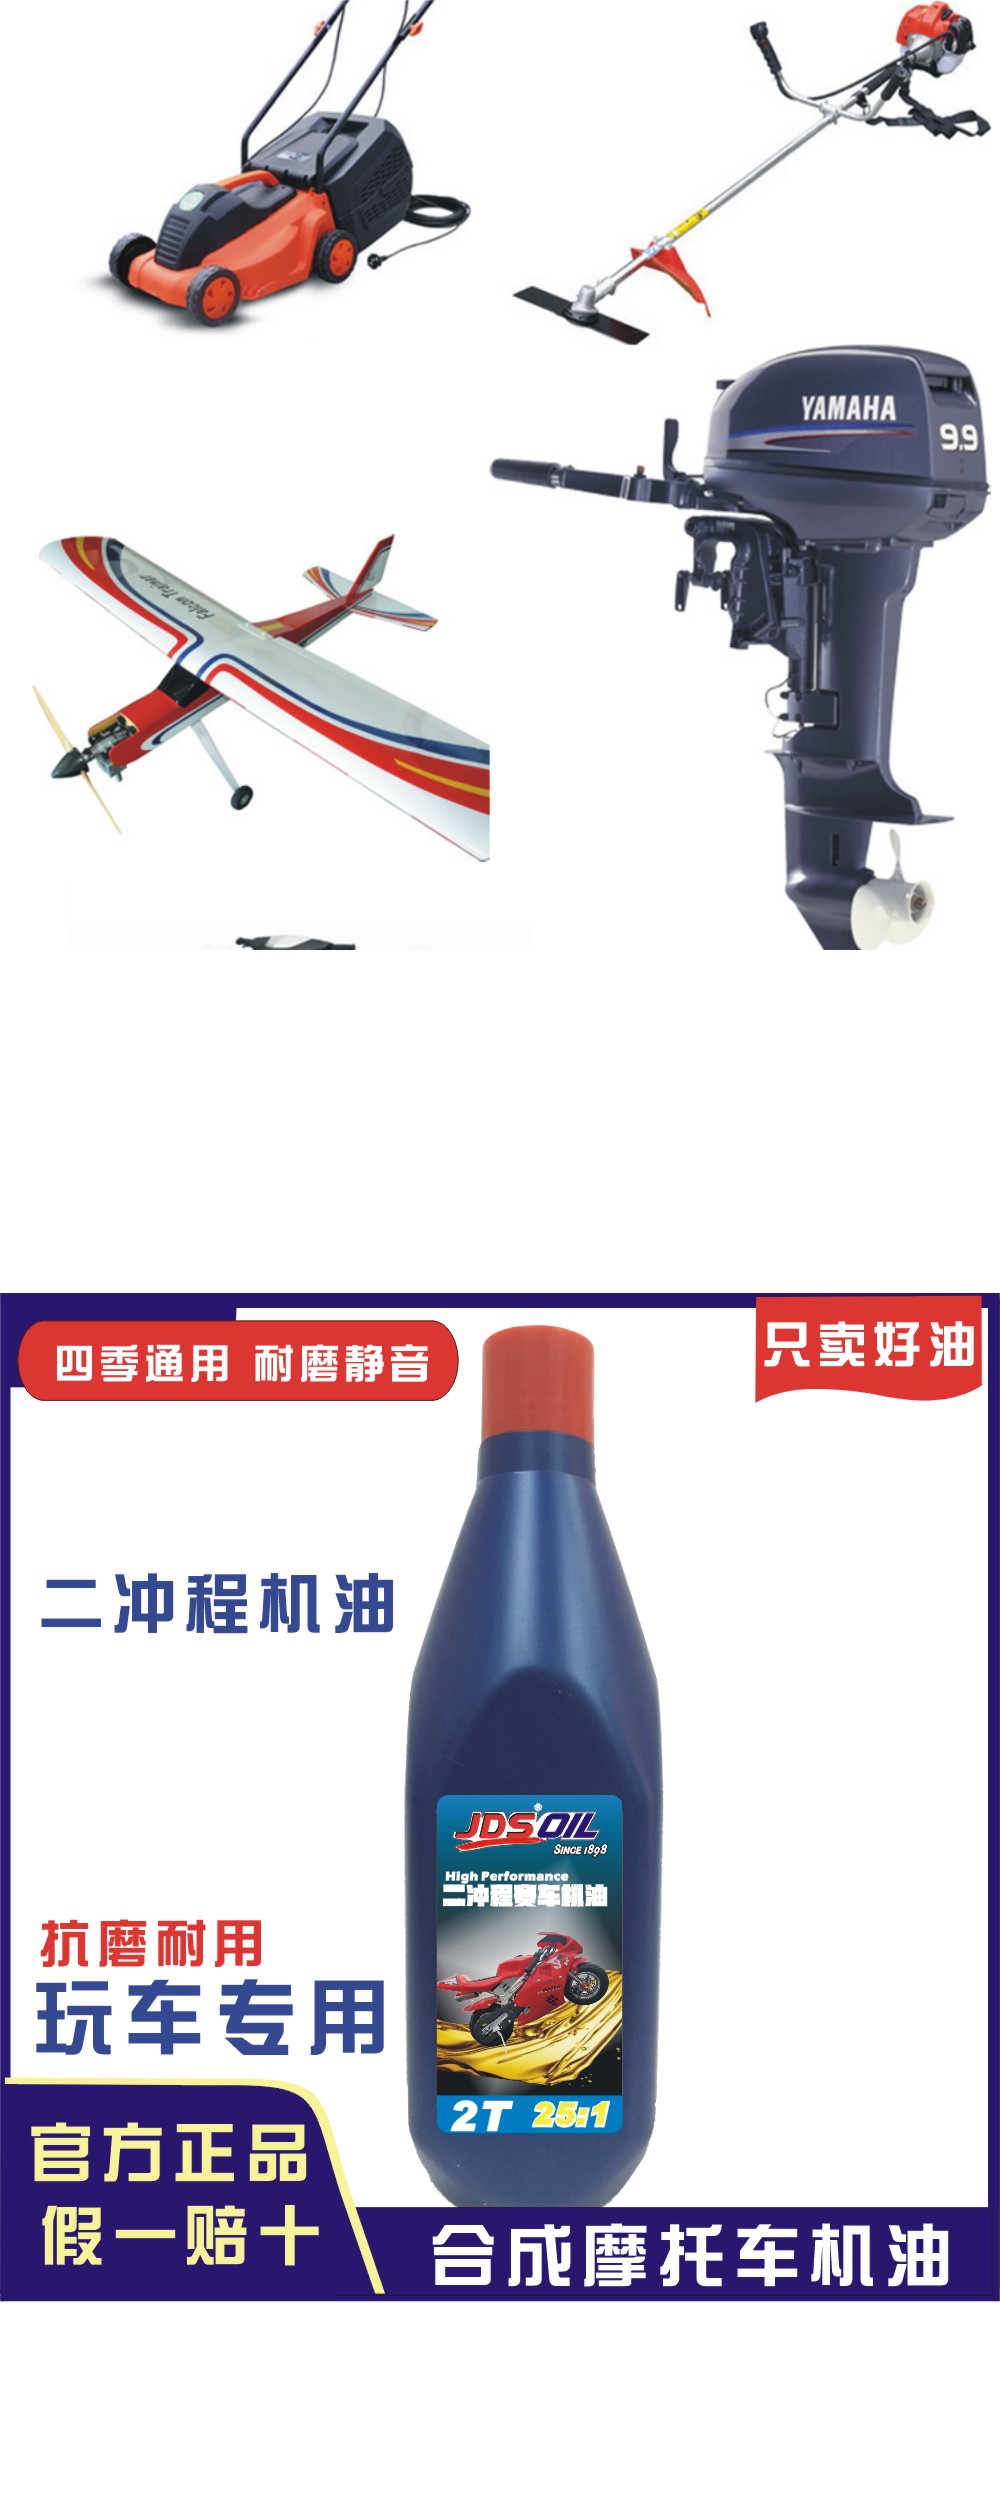 广东摩托润滑油供应长期稳定 广东摩托润滑油厂家供应